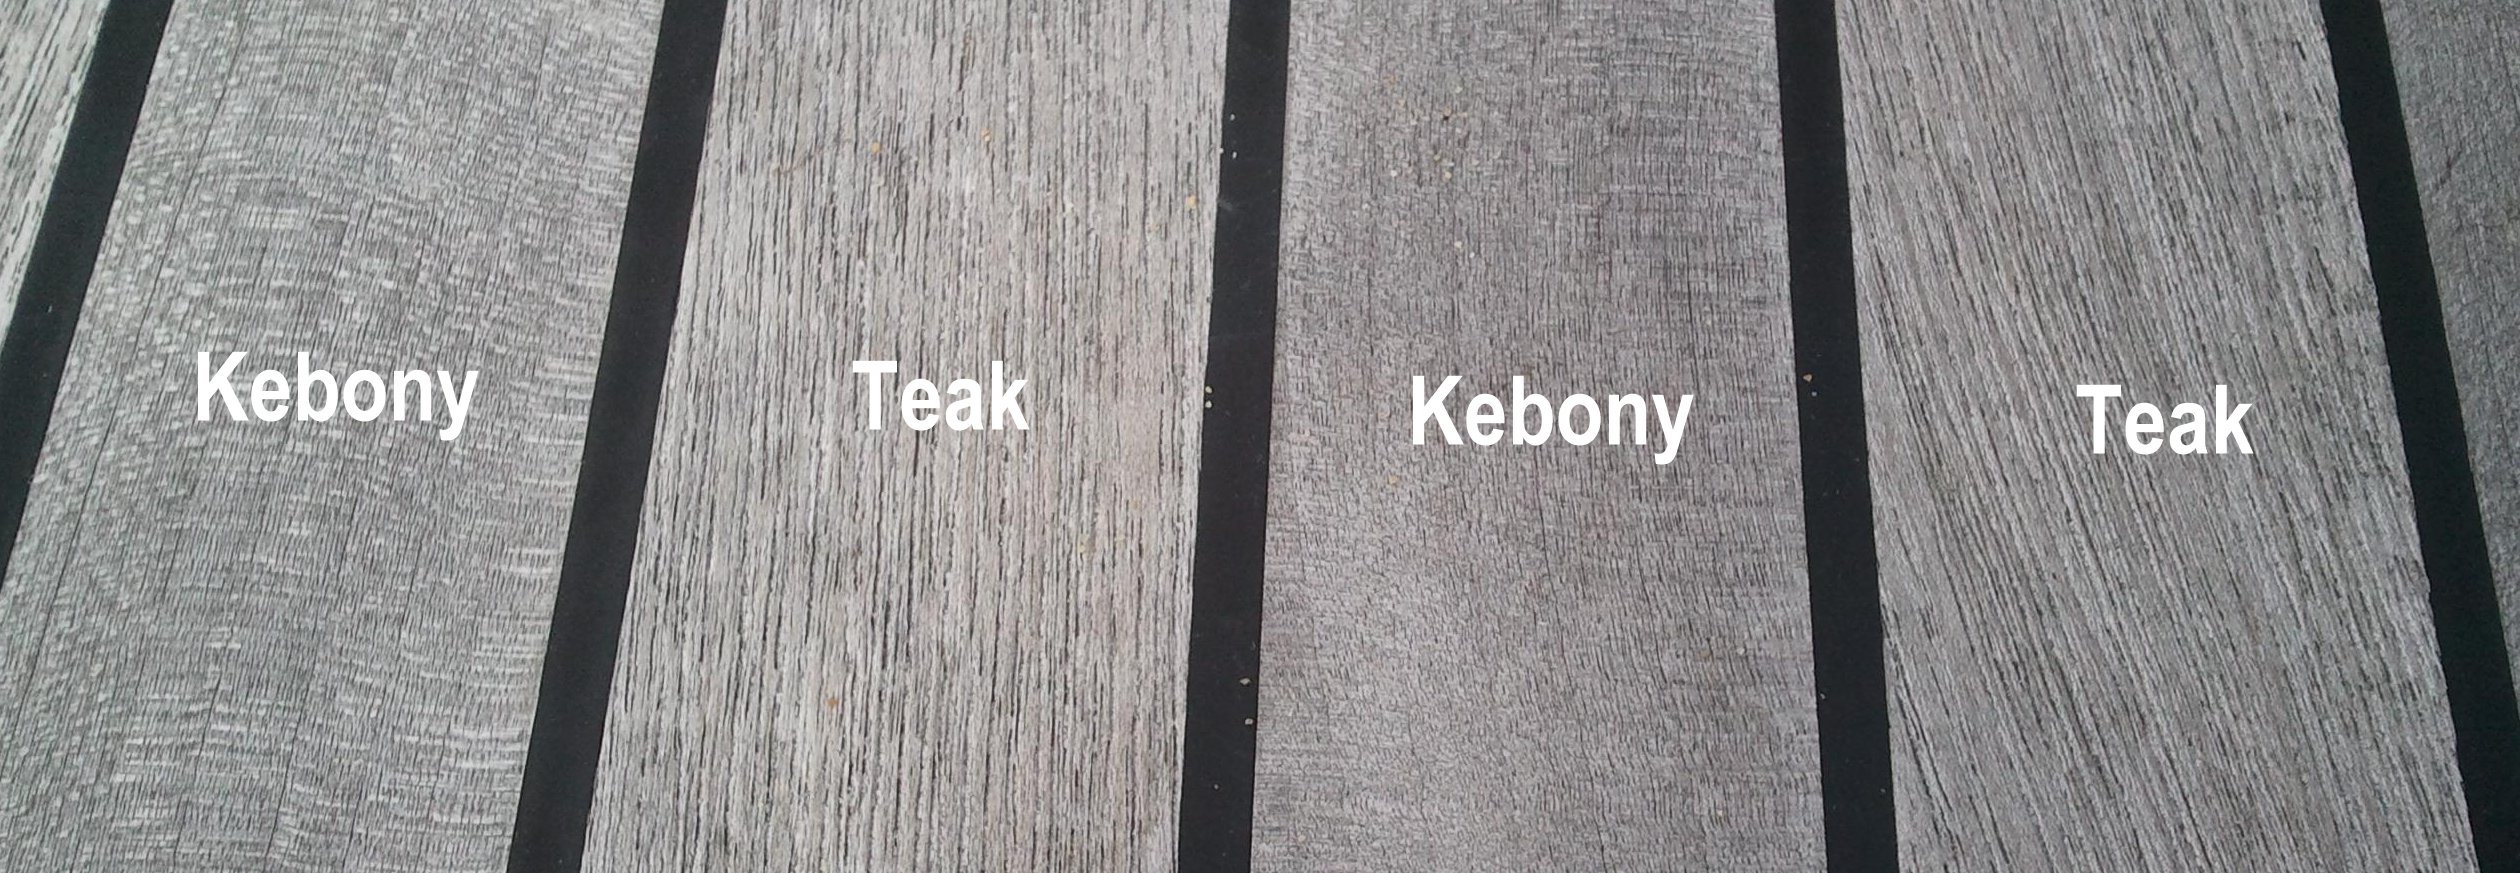 Ansicht Teak neben Kebony neben Teak neben Kebony